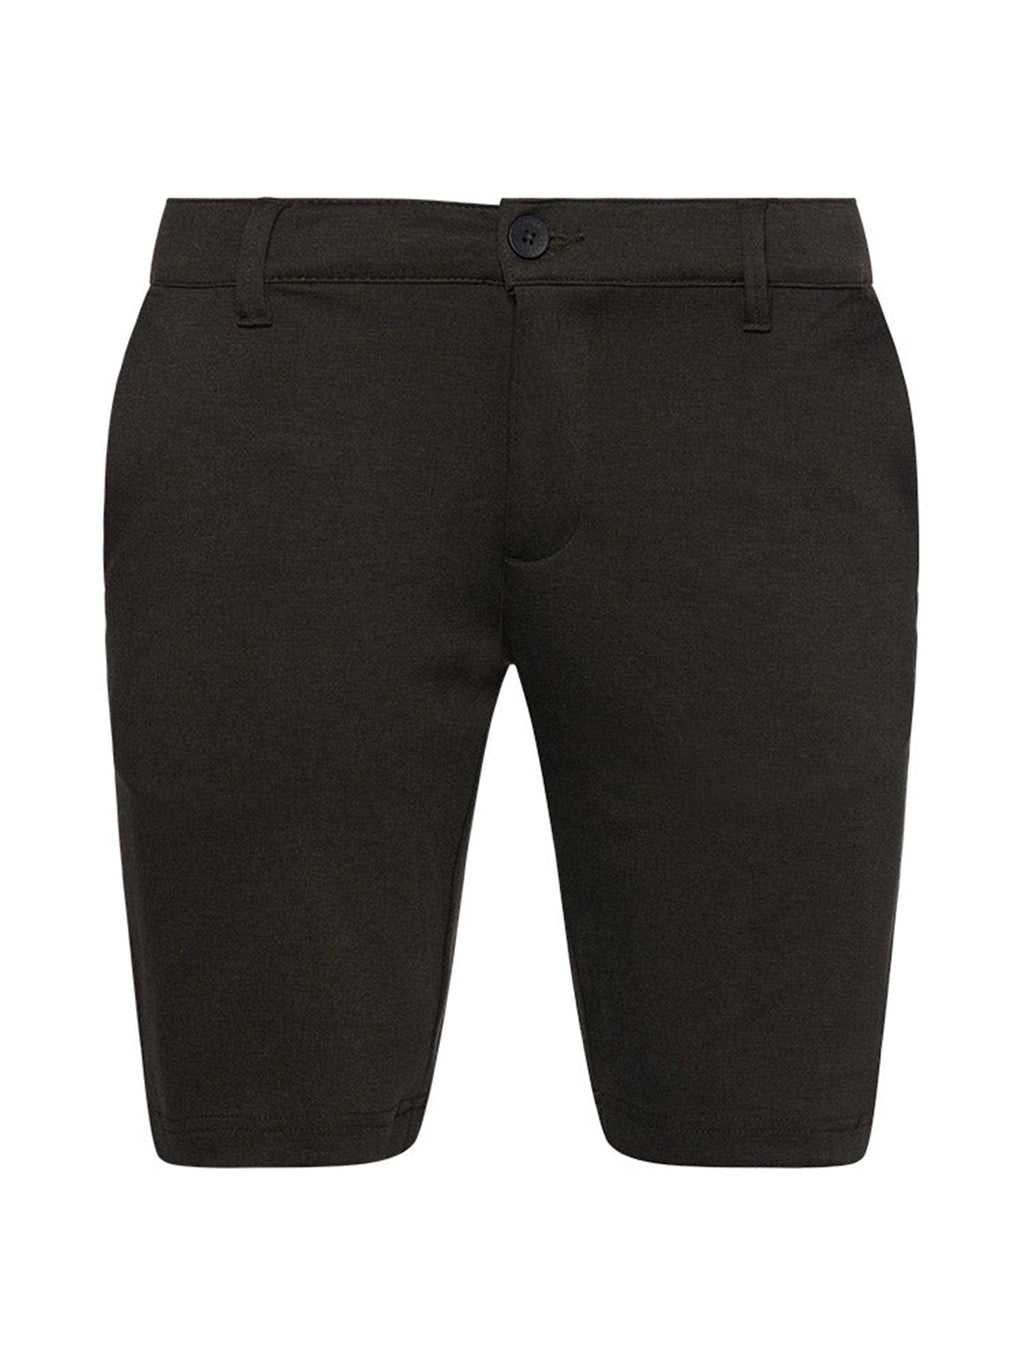 性能短裤 - 深灰色